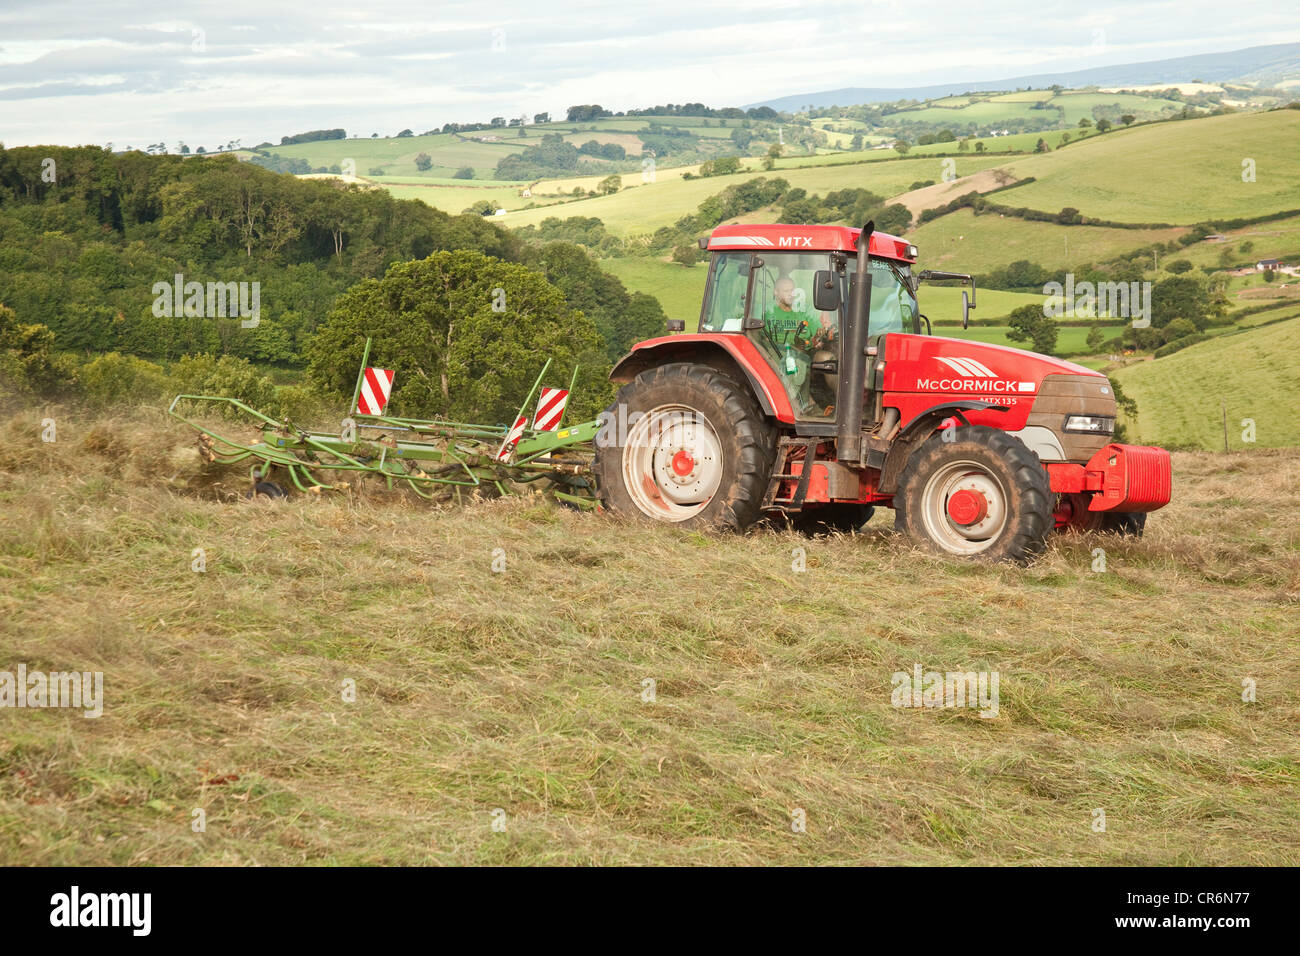 Fermier dans un tracteur le foin, South Hams hills, TOTNES, Devon, Angleterre, Royaume-Uni. Banque D'Images